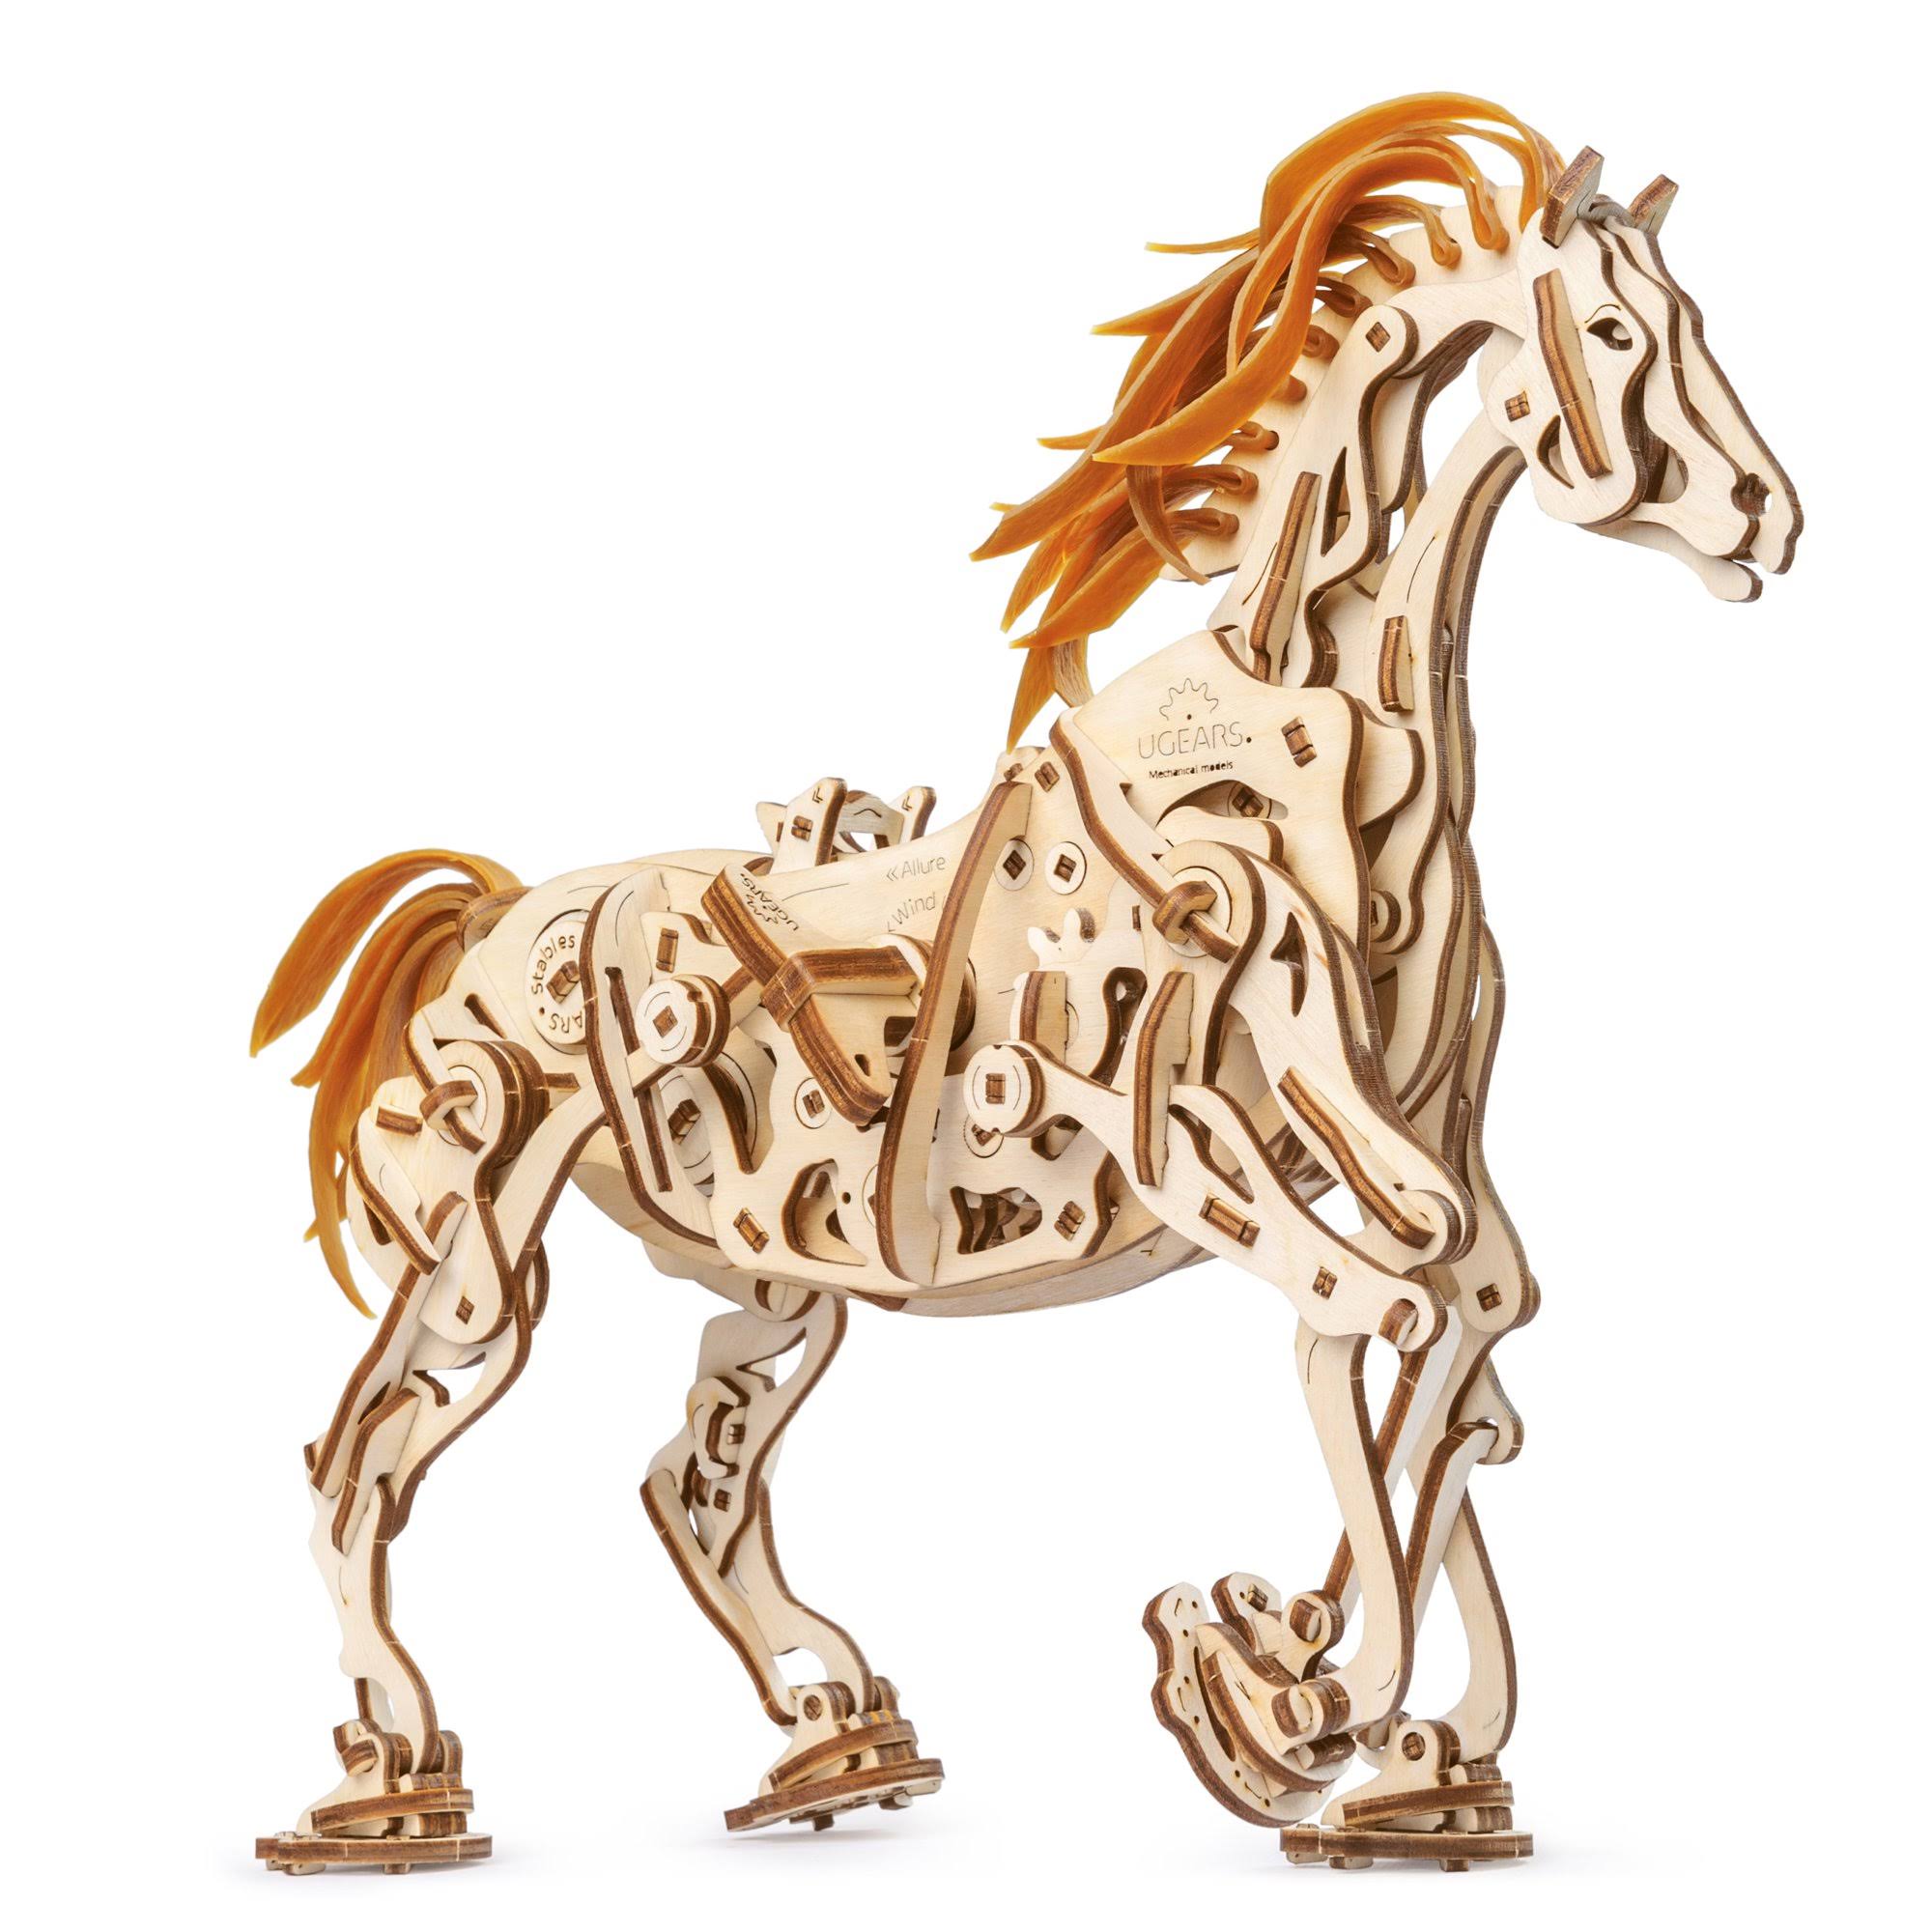 UGears Horse-Mechanoid Wooden 3D Model Kit